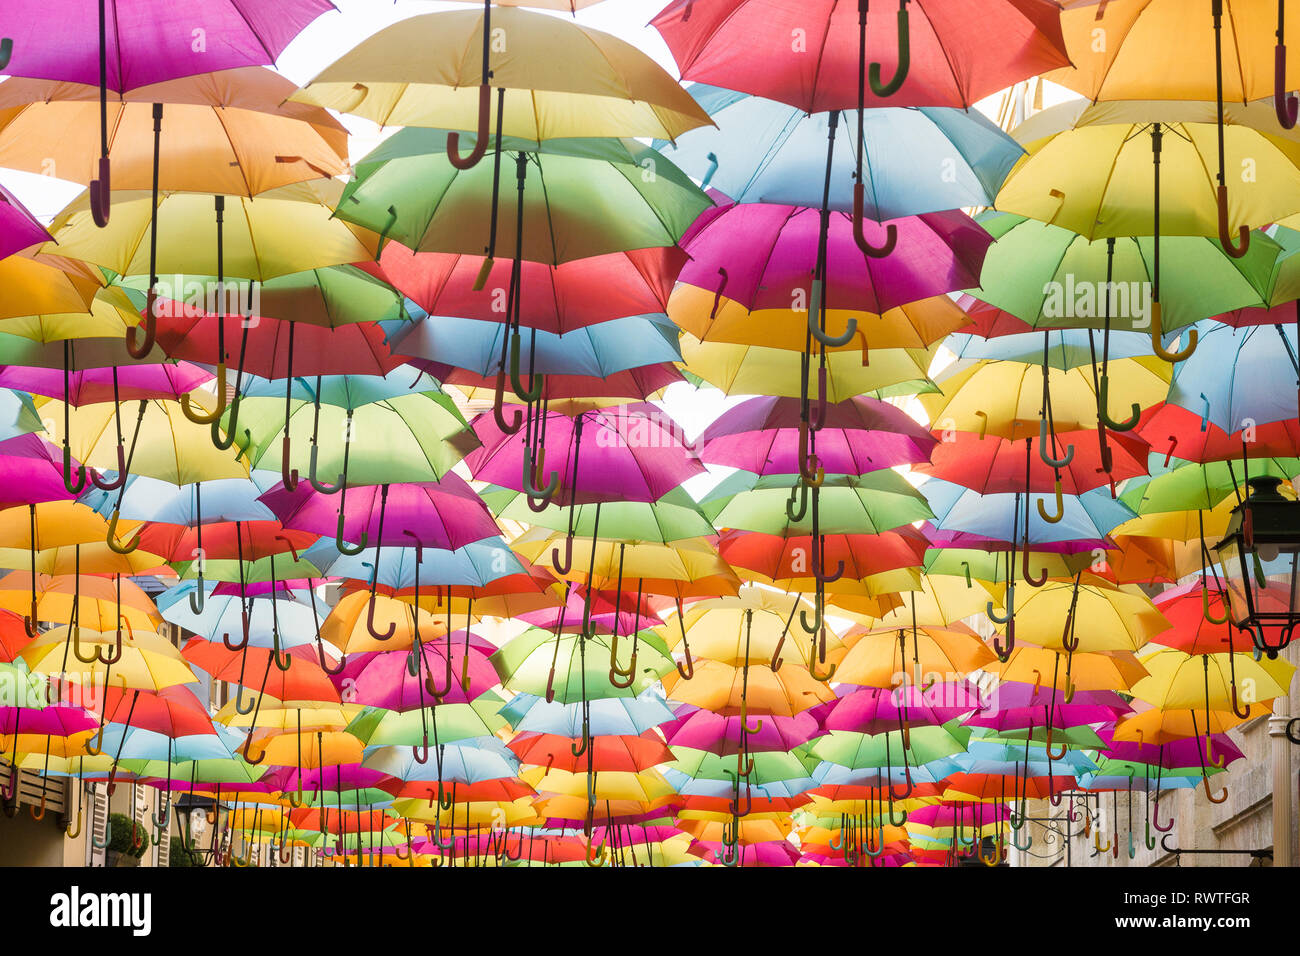 Hängende Regenschirme - Regenschirm 'Himmel' über open air Passage Royal in  Paris, Frankreich Stockfotografie - Alamy